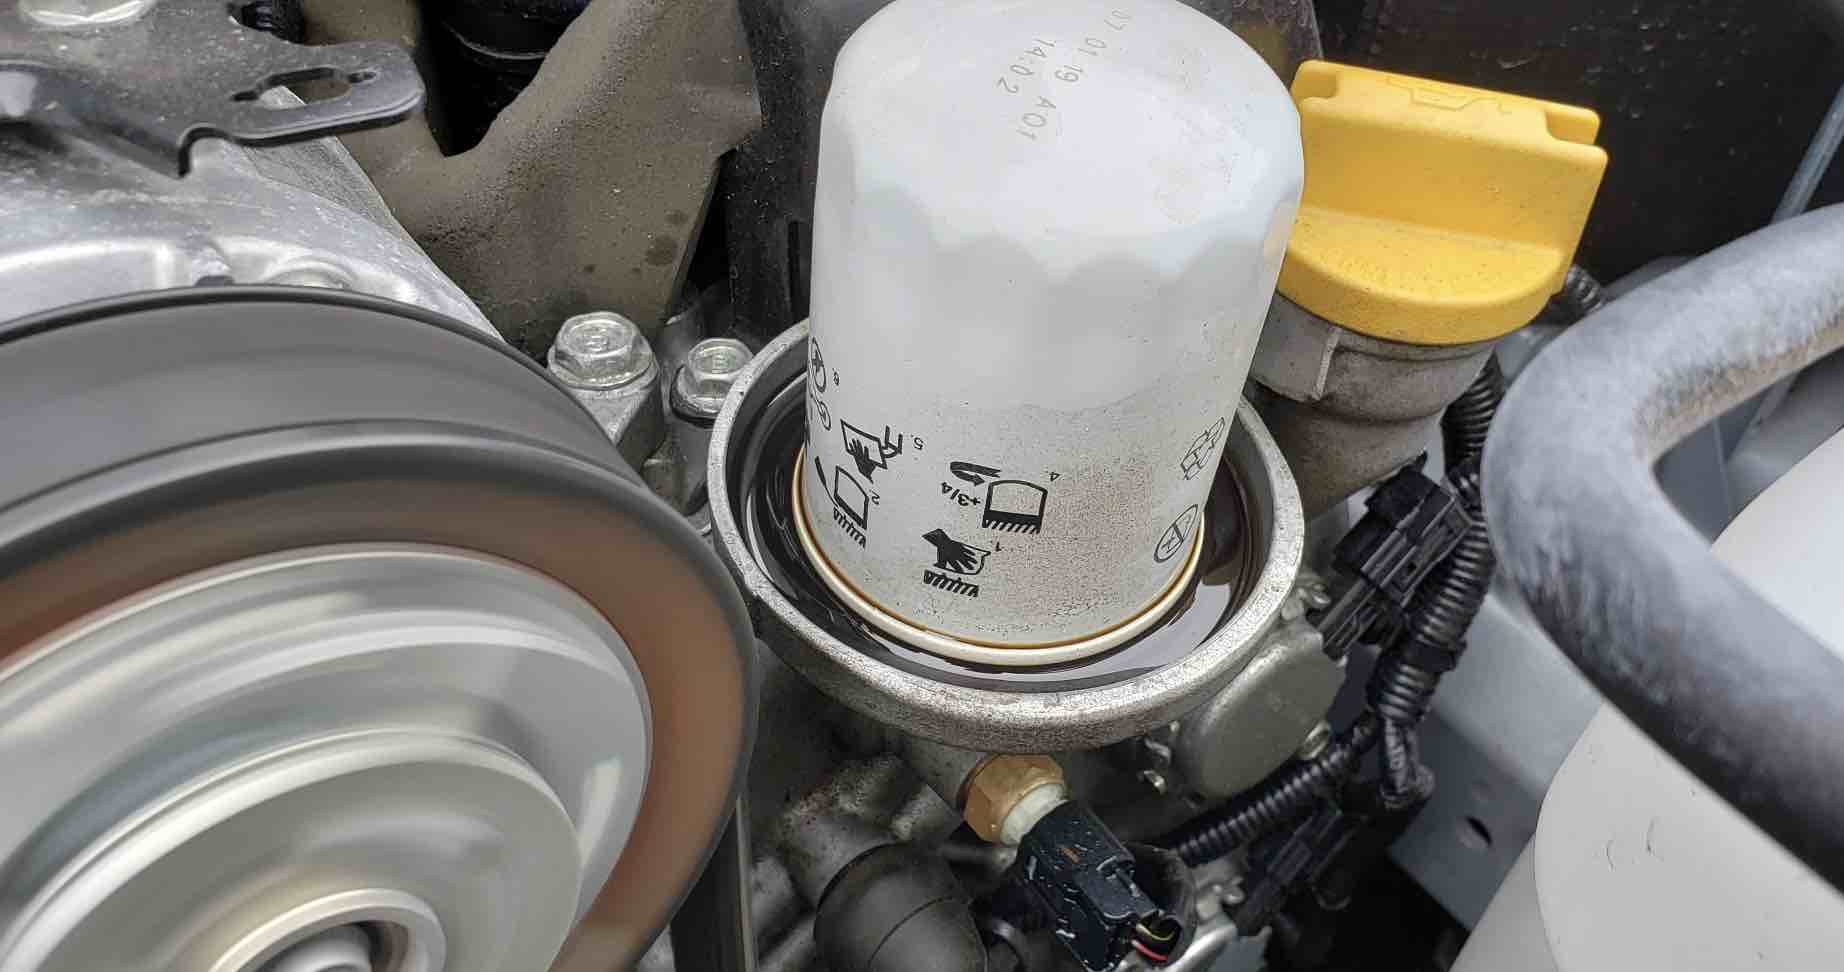 2014 Subaru Forester Oil Capacity, Oil change & Reset Of Oil Light